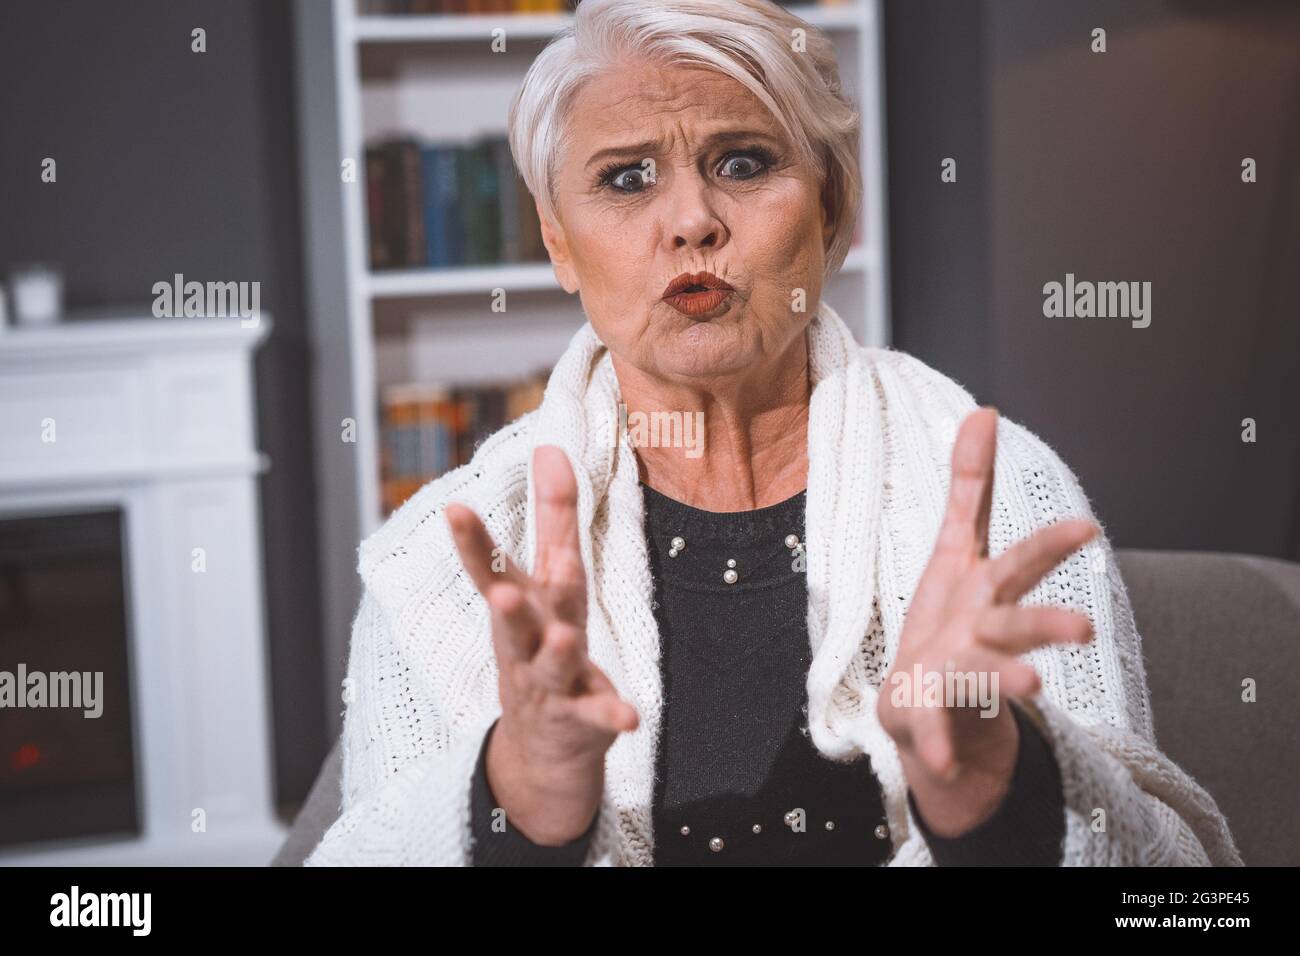 La femme sénior afftive grimace avec colère de façon impressionnante Banque D'Images